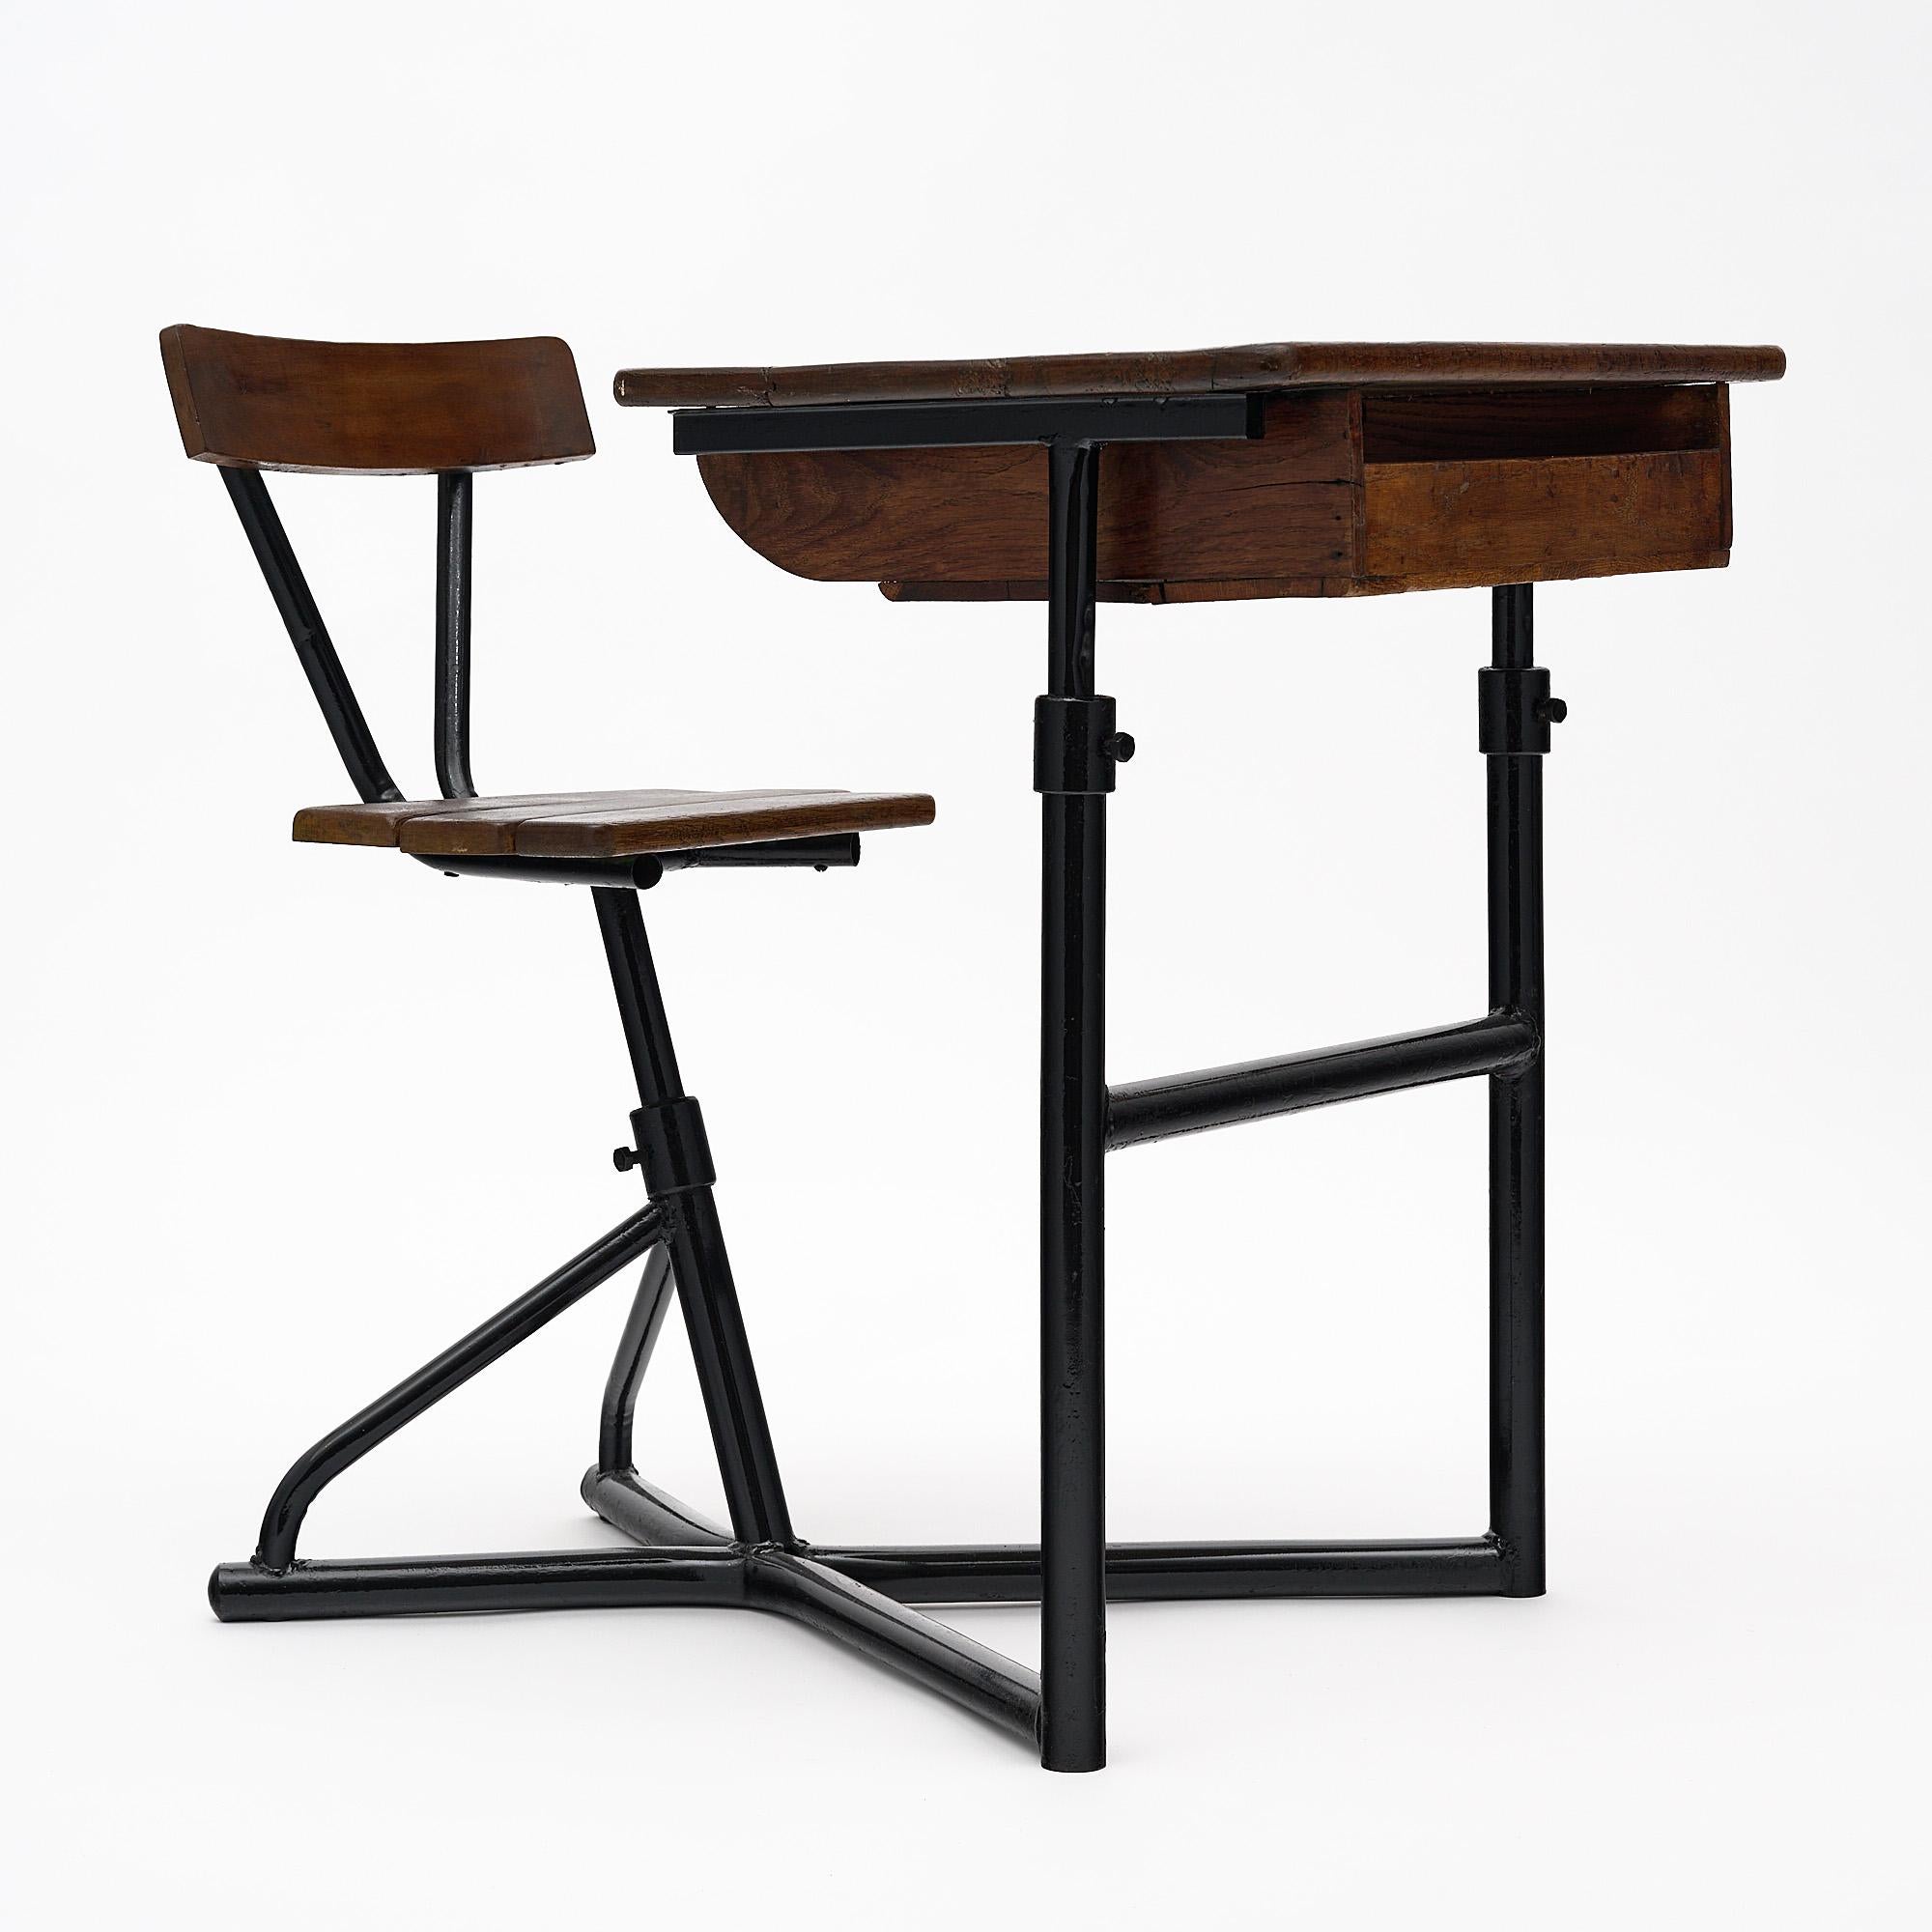 Moderner französischer Schulschreibtisch aus der Mitte des Jahrhunderts mit einem schwarz lackierten Stahlgestell, das sowohl einen verstellbaren Holzstuhl als auch einen verstellbaren Holzschreibtisch mit einer Schreibfläche und einem Fach trägt.